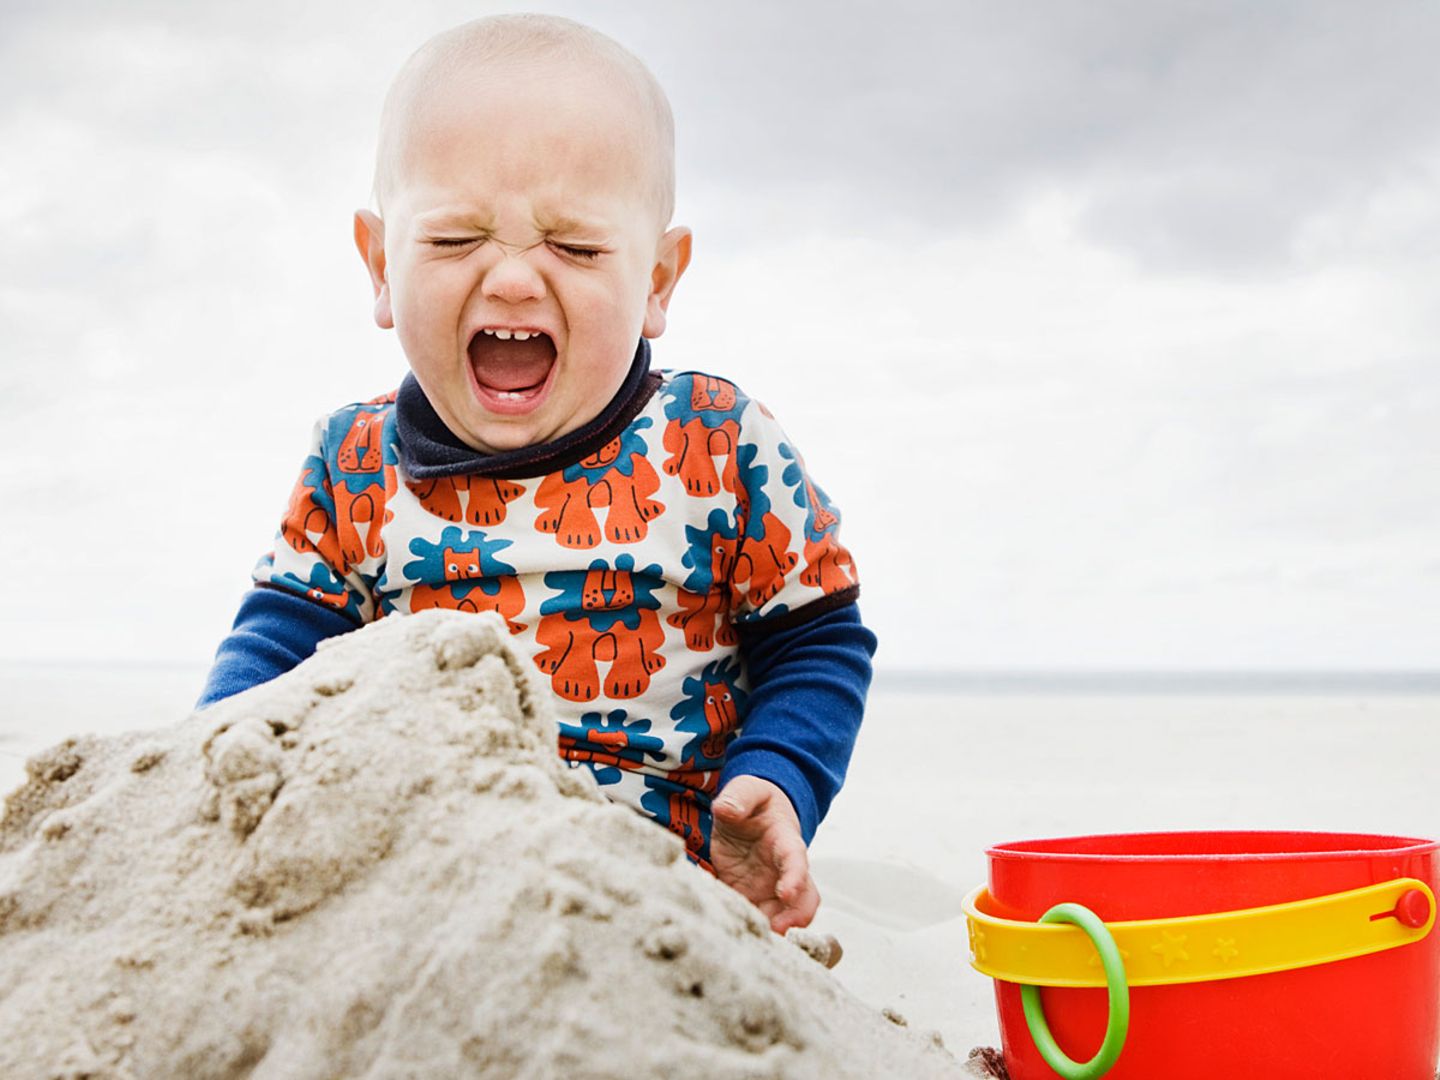 32 Gründe, warum mein Kleinkind einen Wutanfall bekommt